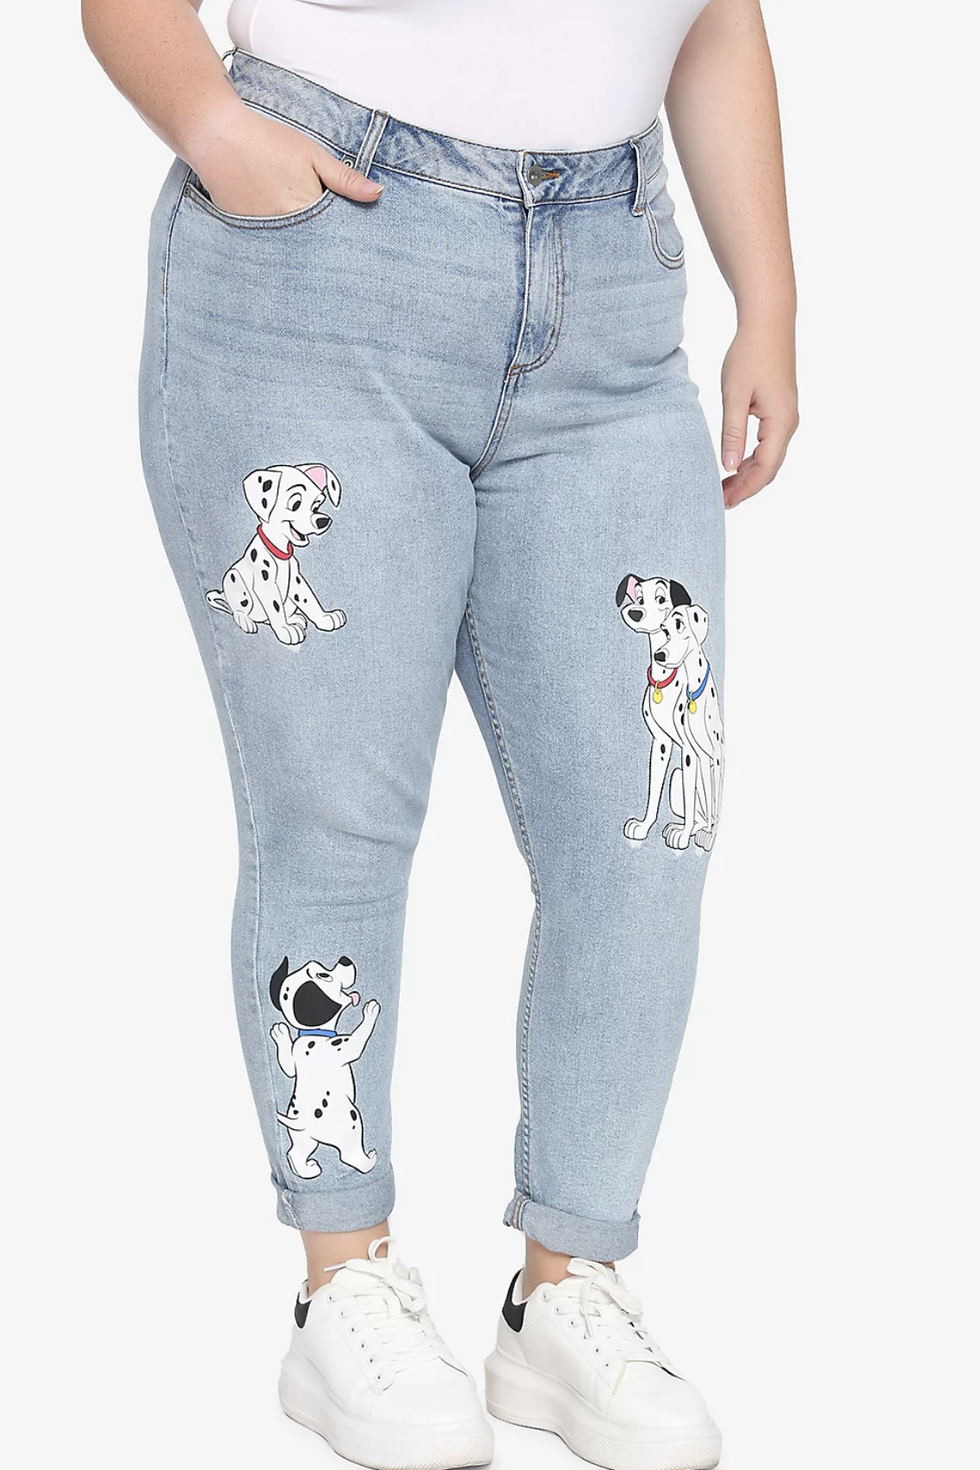 101 Dalmatians Mom Jeans Plus Size